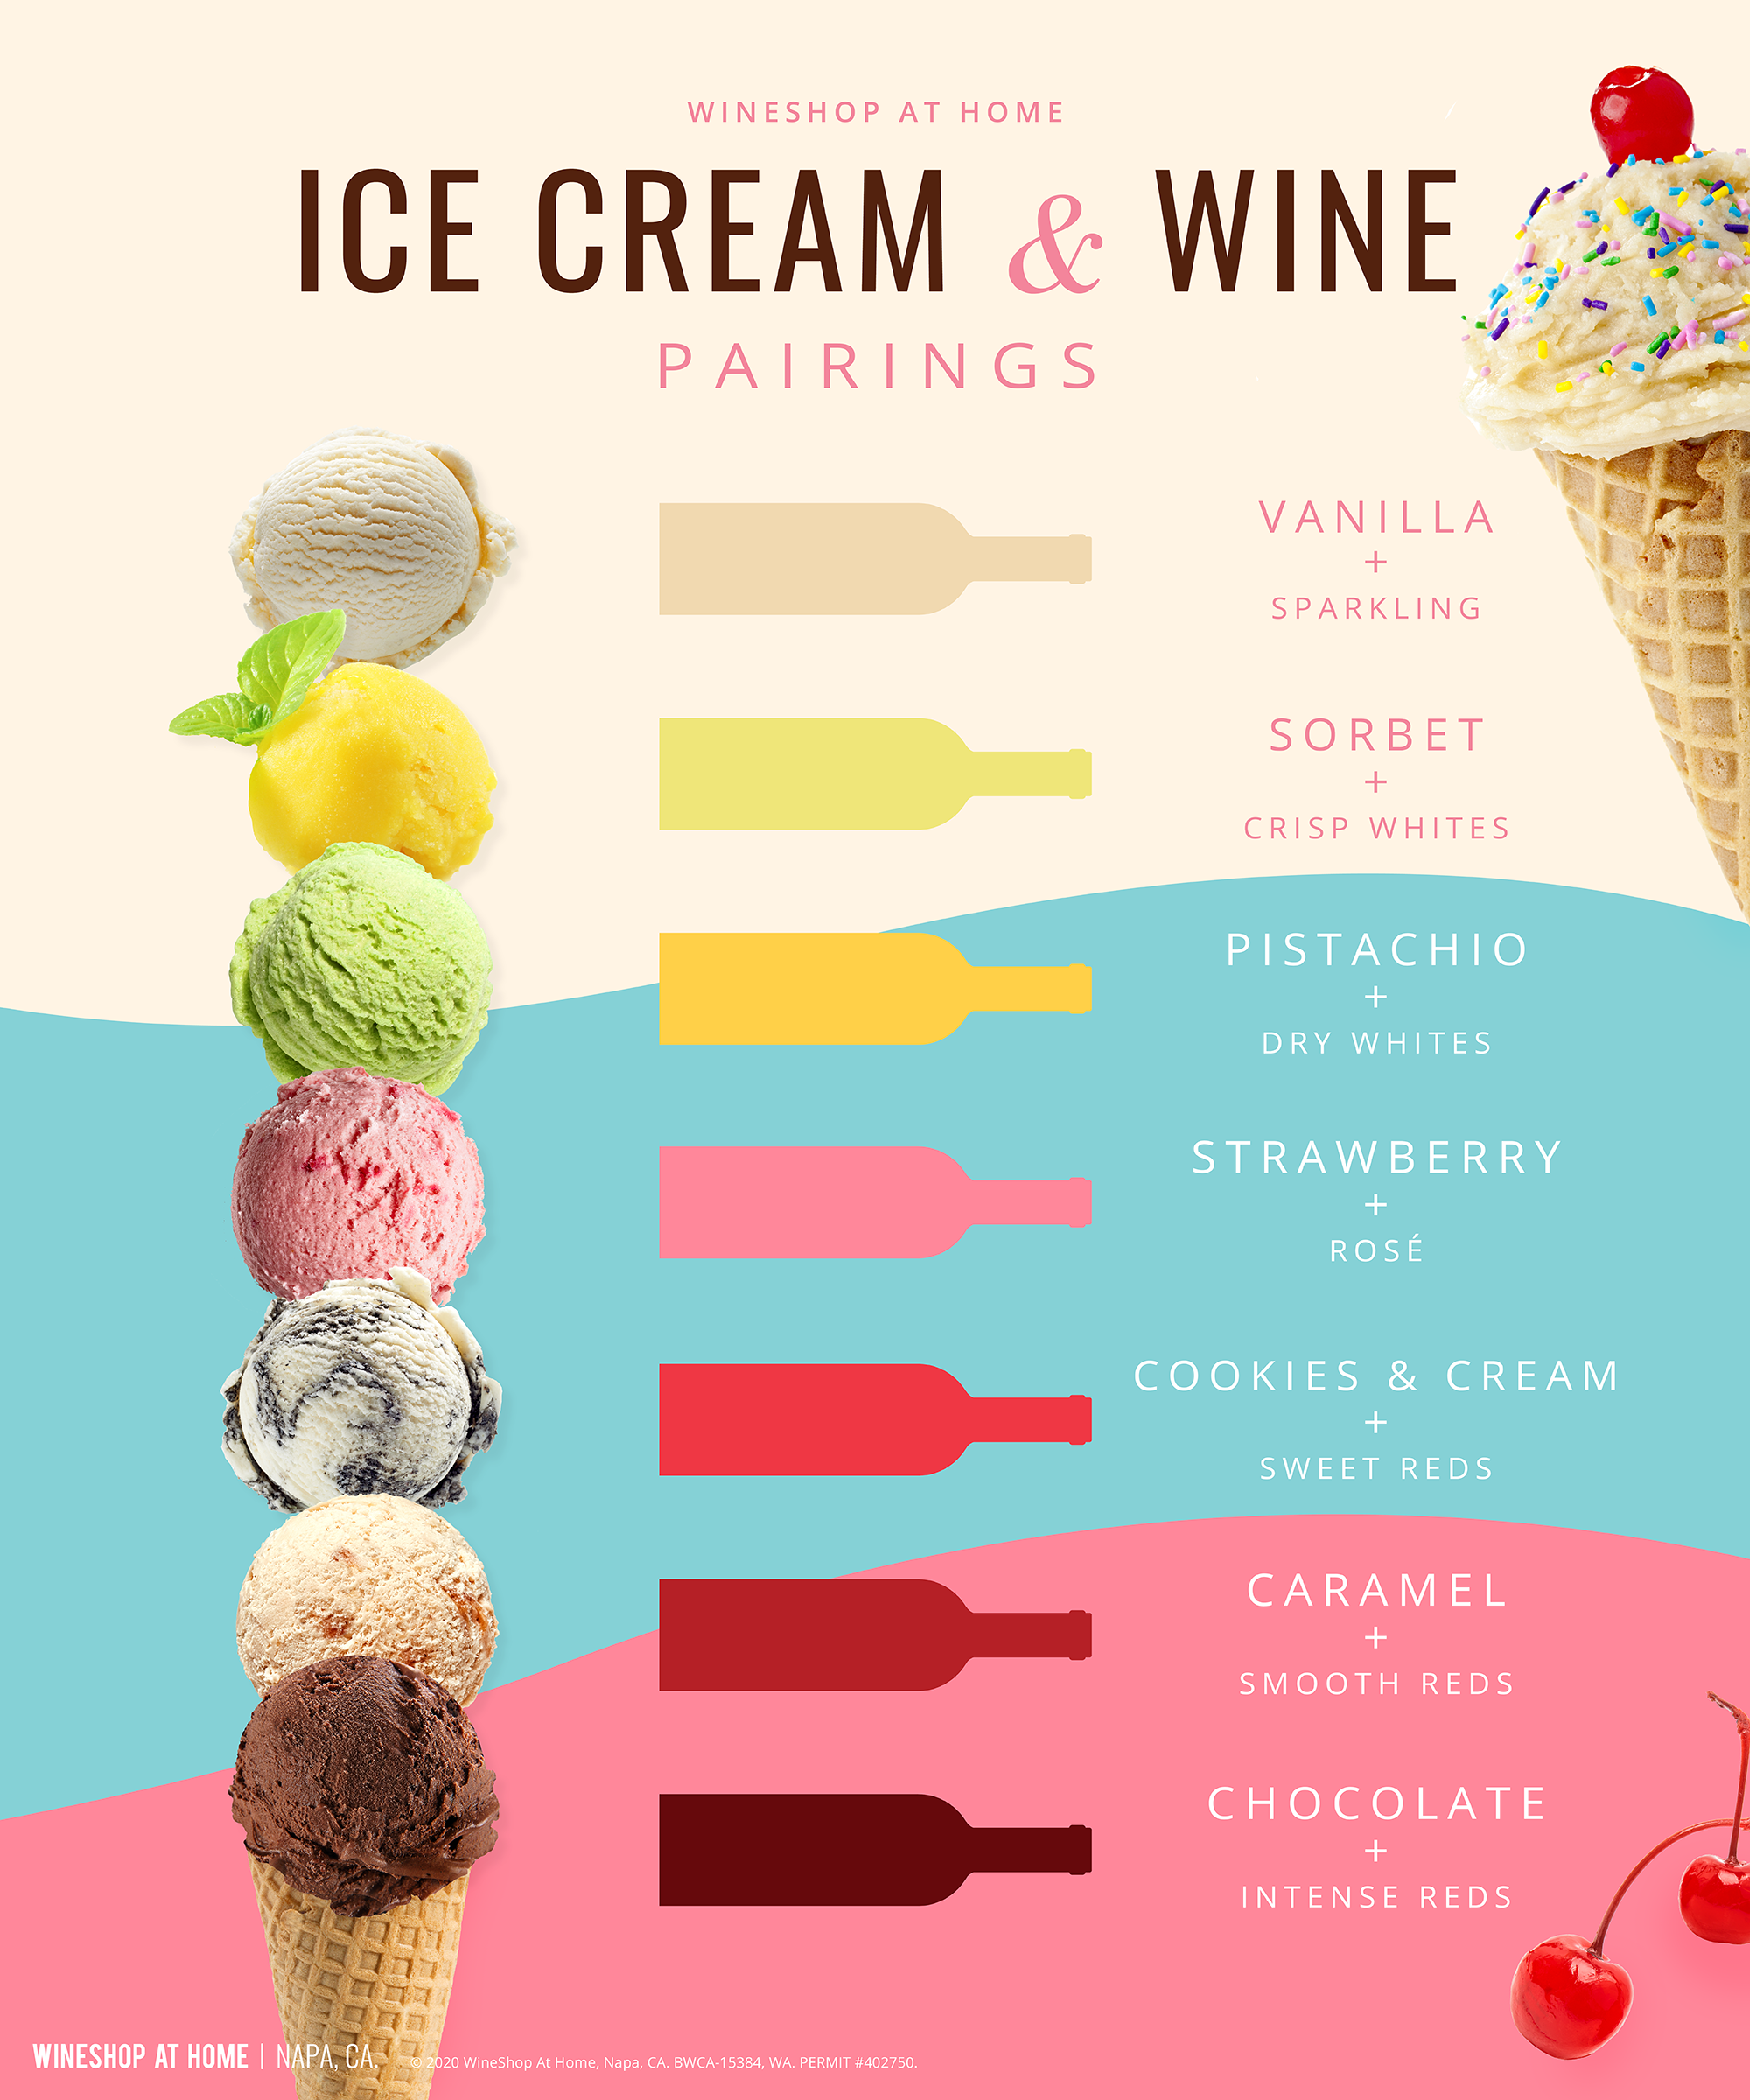 Ice Cream and wine pairing chart